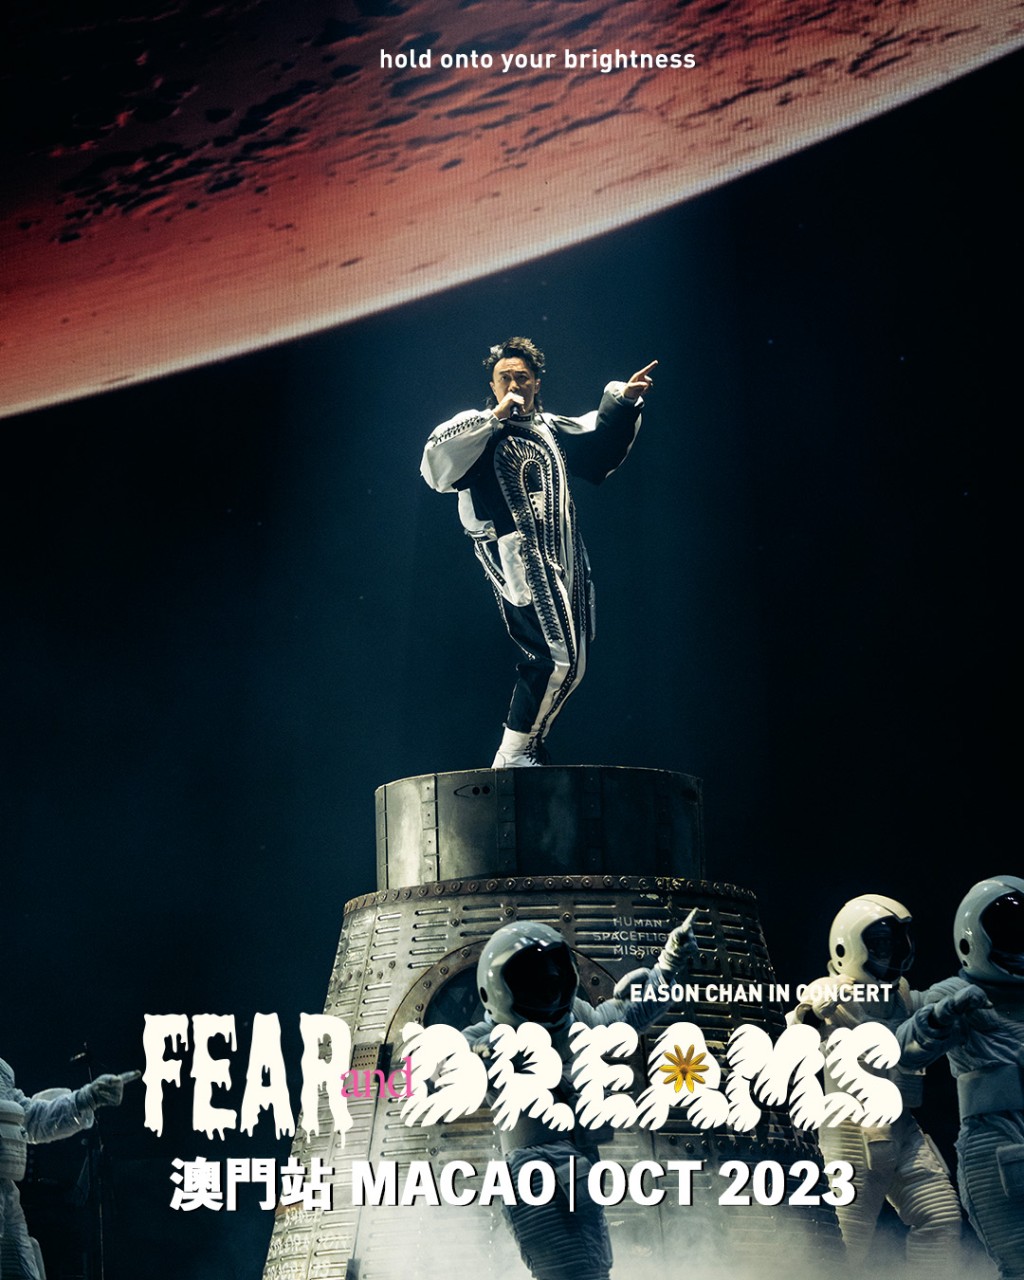 陈奕迅《FEAR AND DREAMS世界巡回演唱会》澳门站日前开锣。